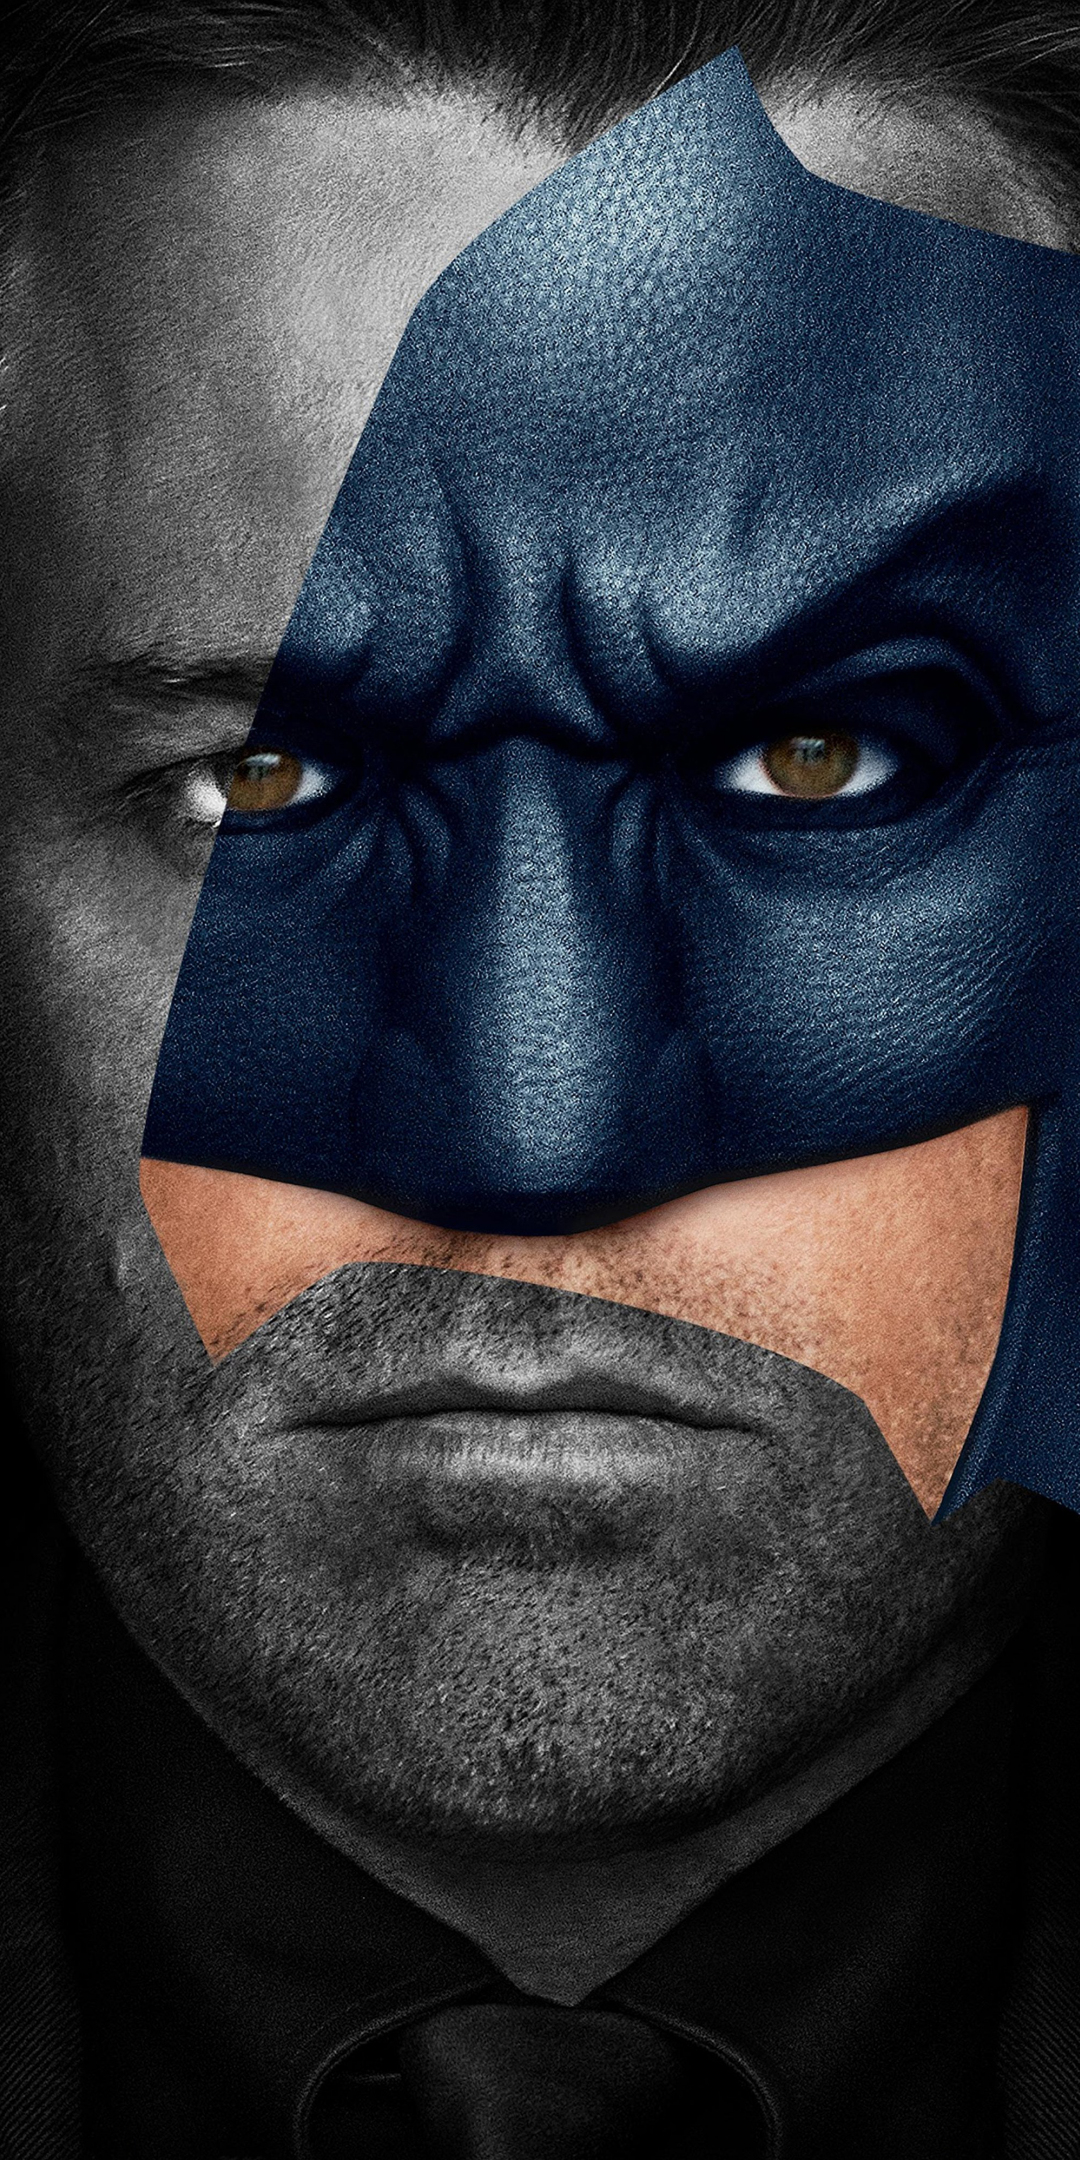 Batman, Ben Affleck, justice league, movie, 1080x2160 wallpaper